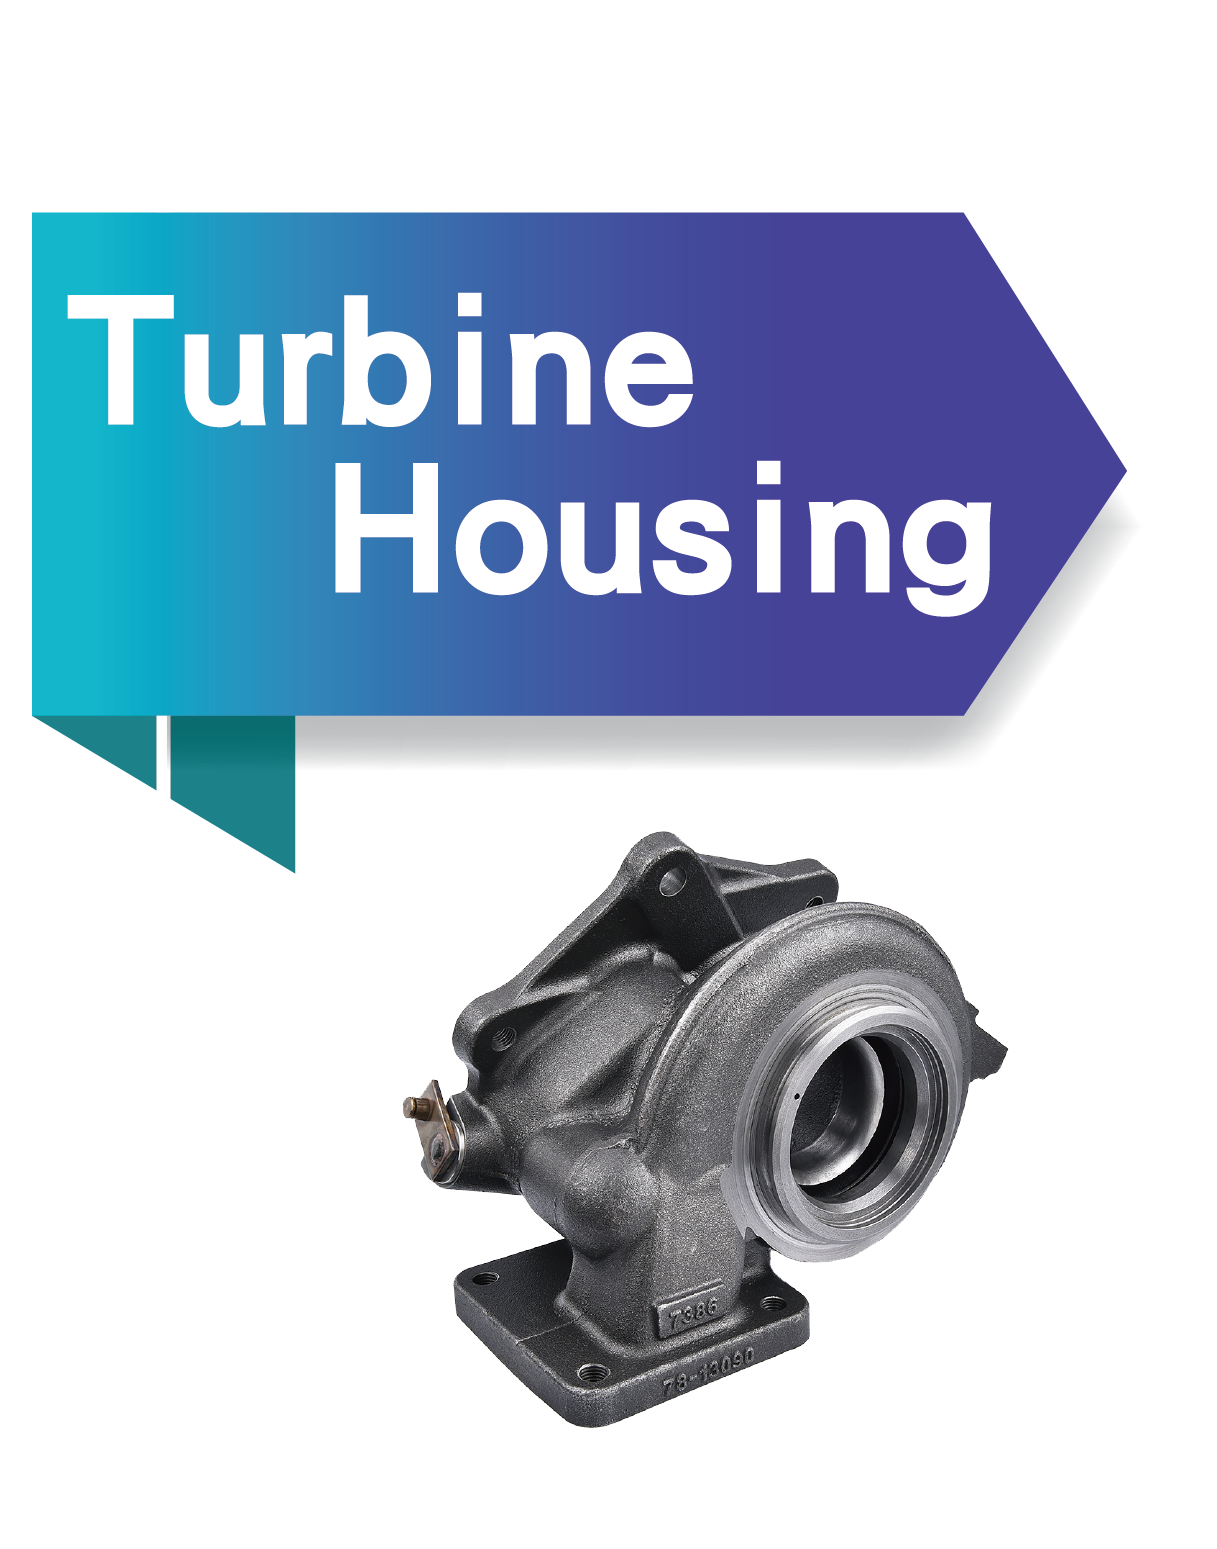 Turbine Housing